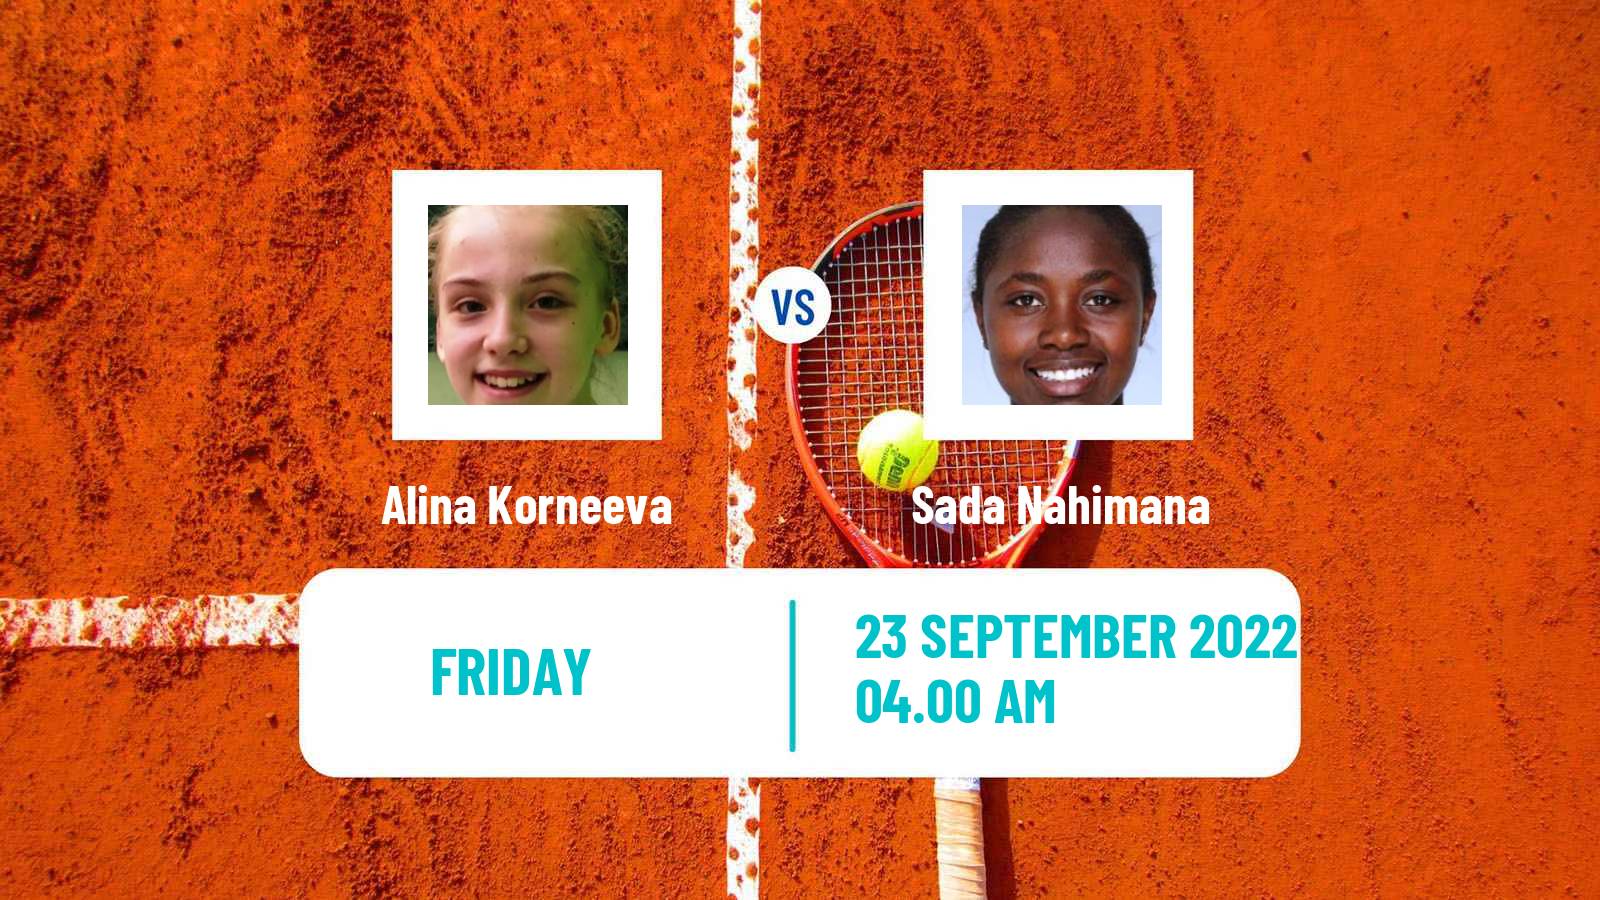 Tennis ITF Tournaments Alina Korneeva - Sada Nahimana